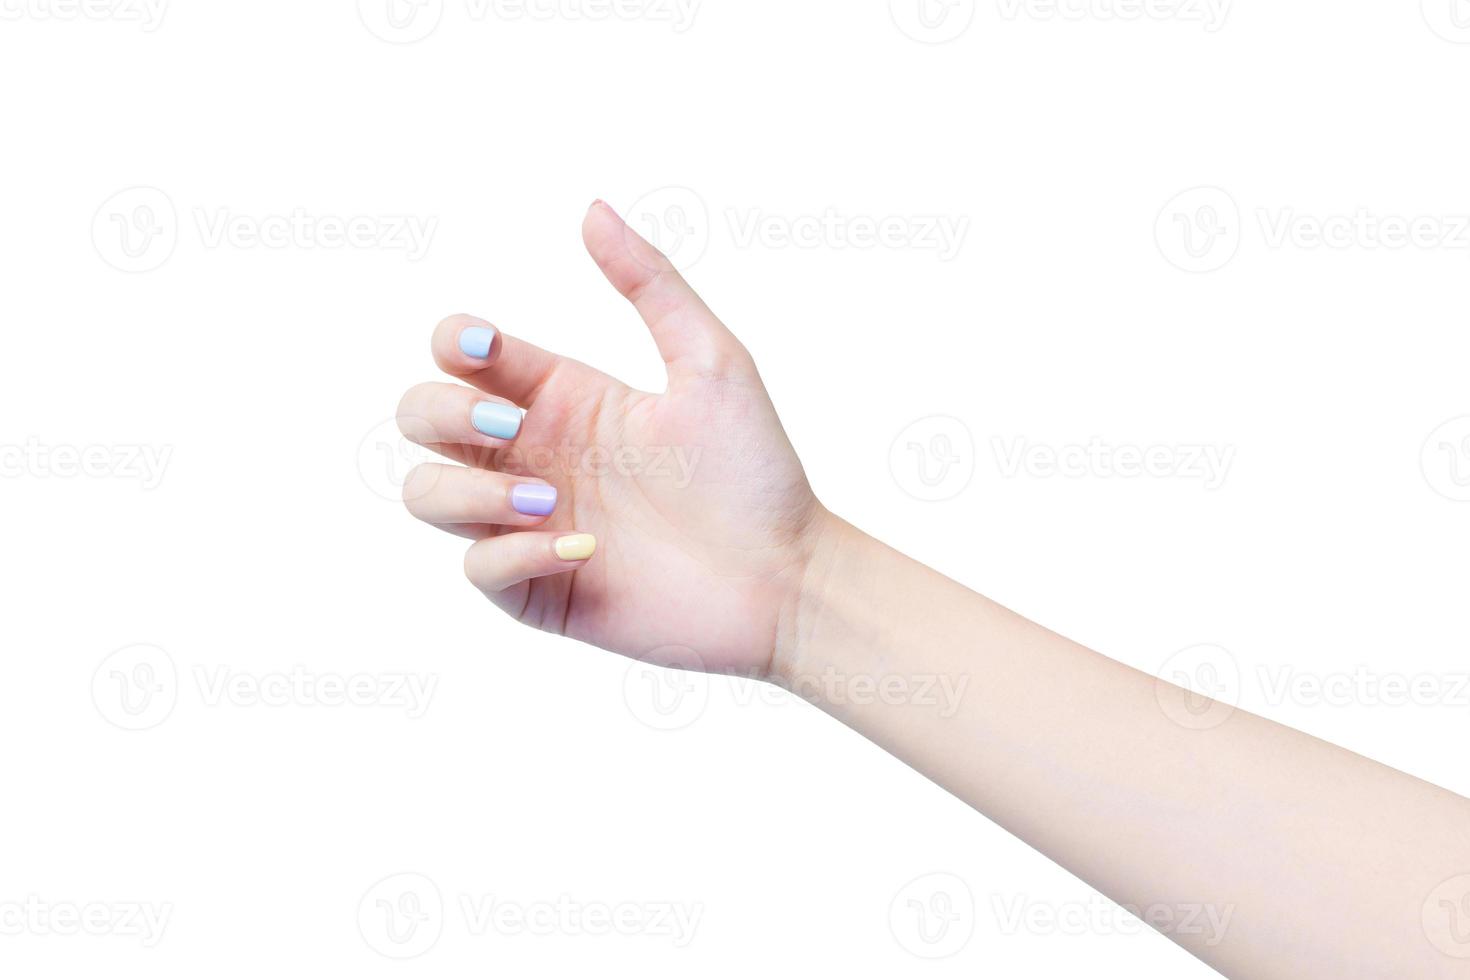 skön kvinna hand handlingar som applicering lotion eller hand grädde till hand vård medan hon innehar något i henne händer i spa och manikyr begrepp. foto